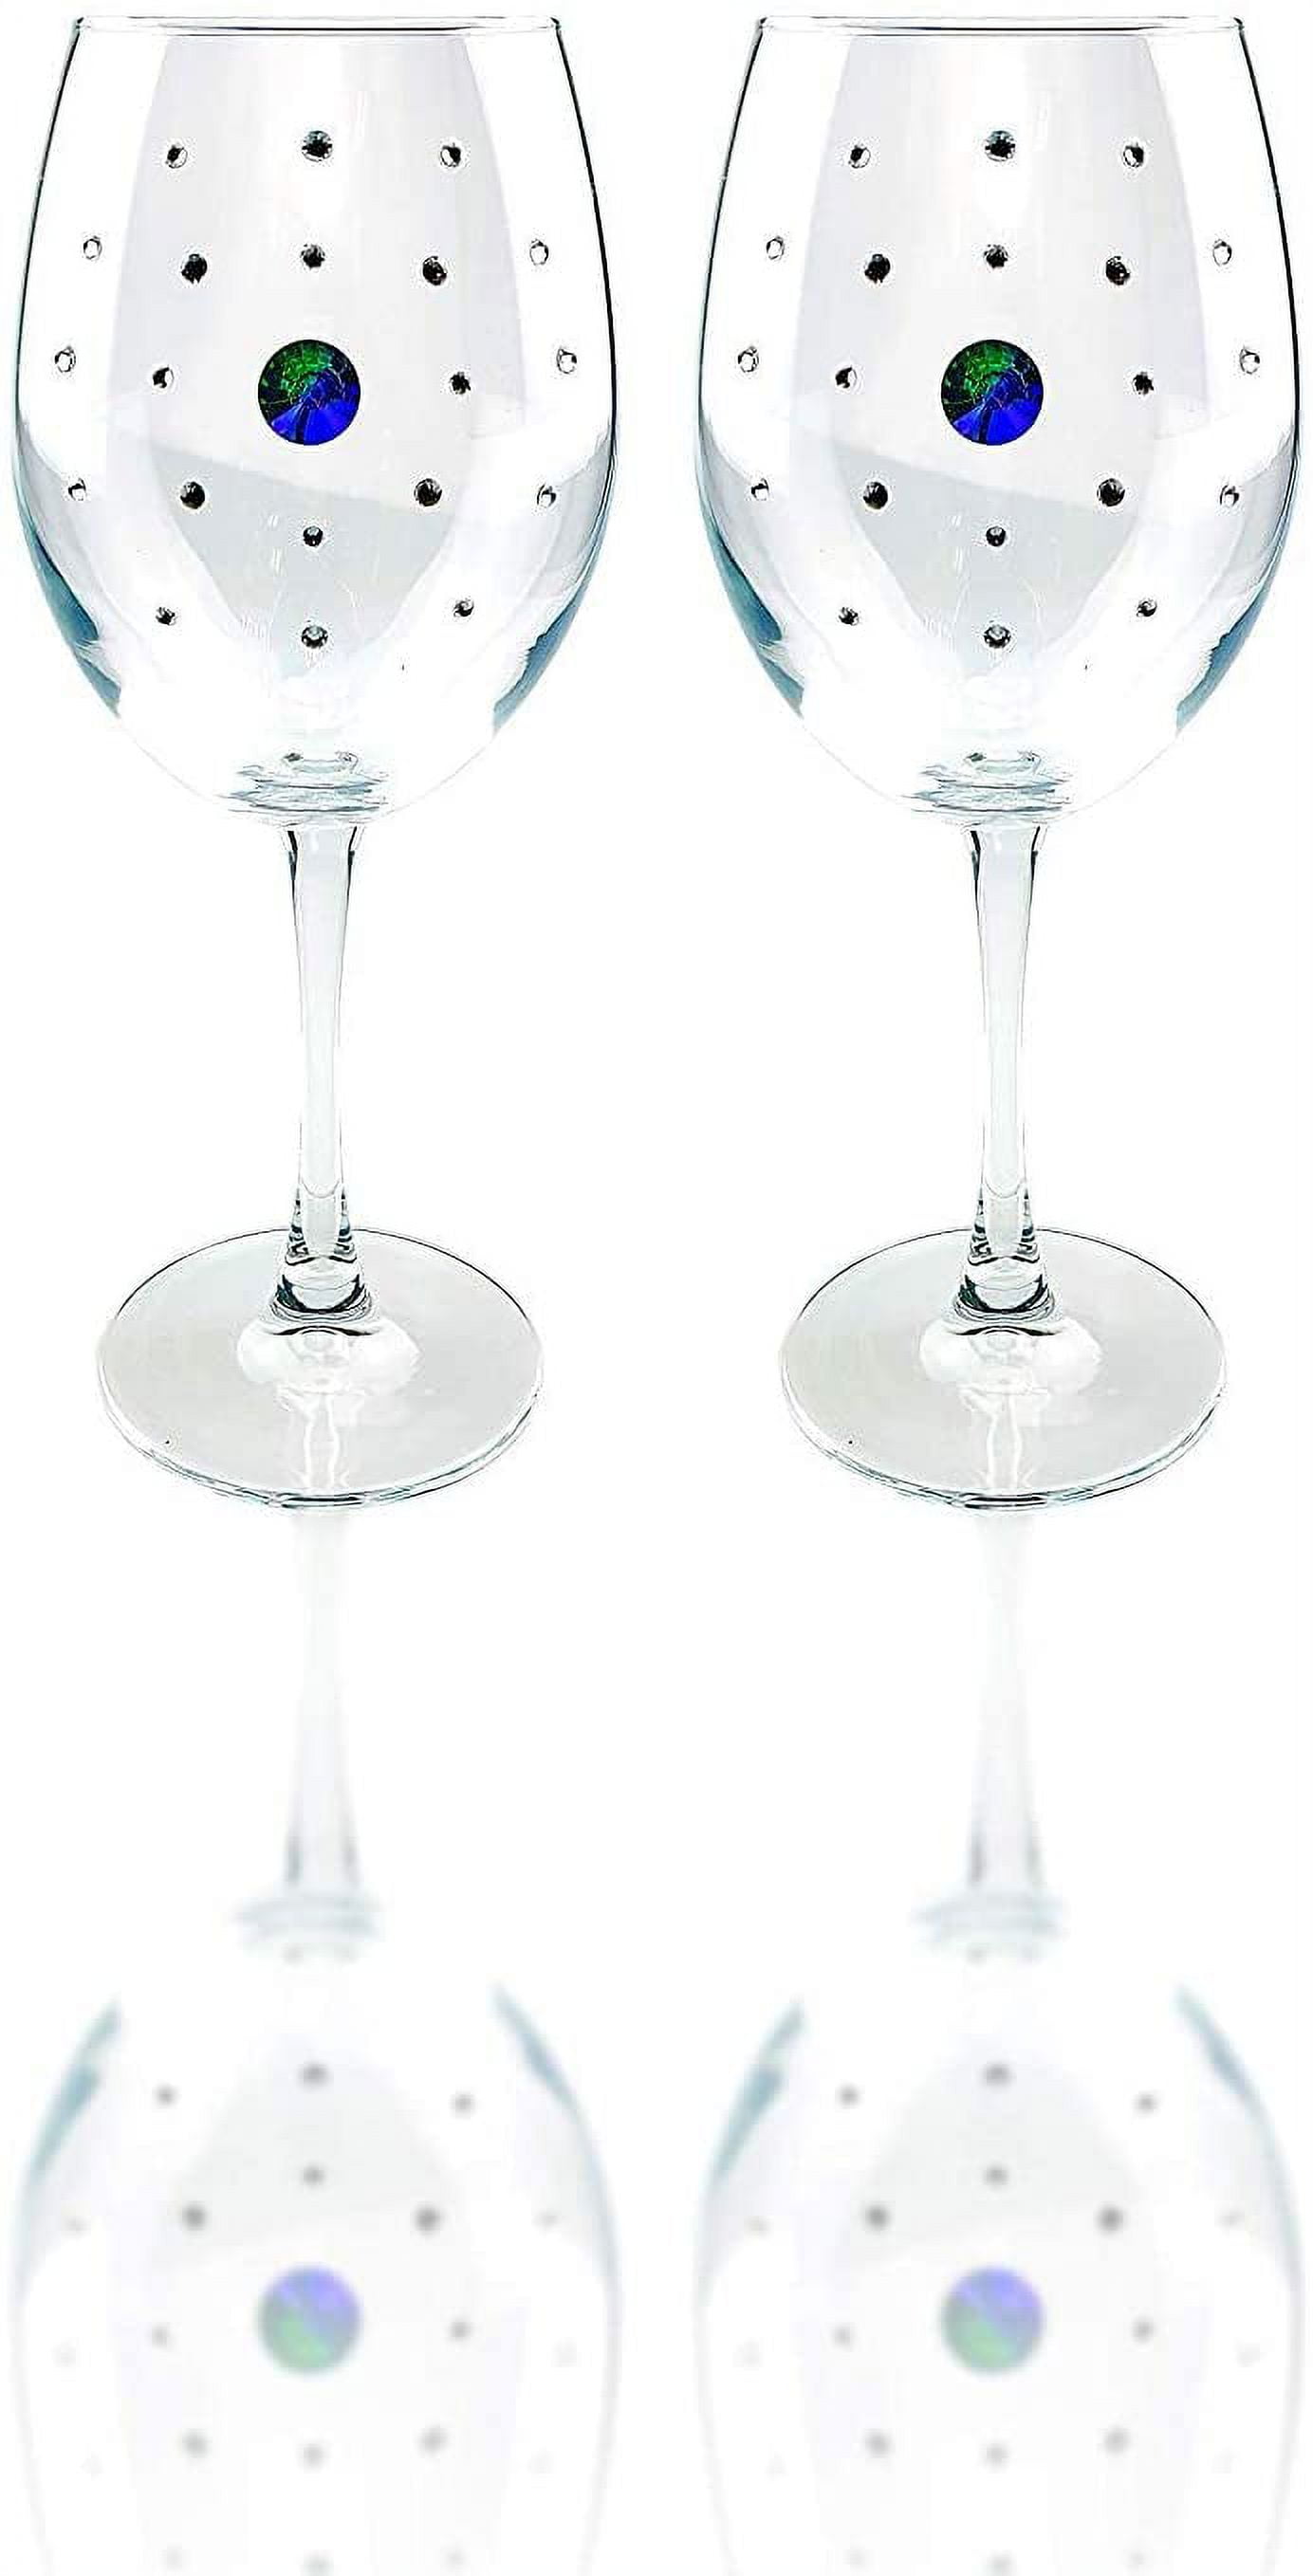 Popov 44738-823, 21 Oz Swarovski Jeweled Wine Glasses, Crystal Stemmed  Goblets w/ Rhinestones, Set of 6 